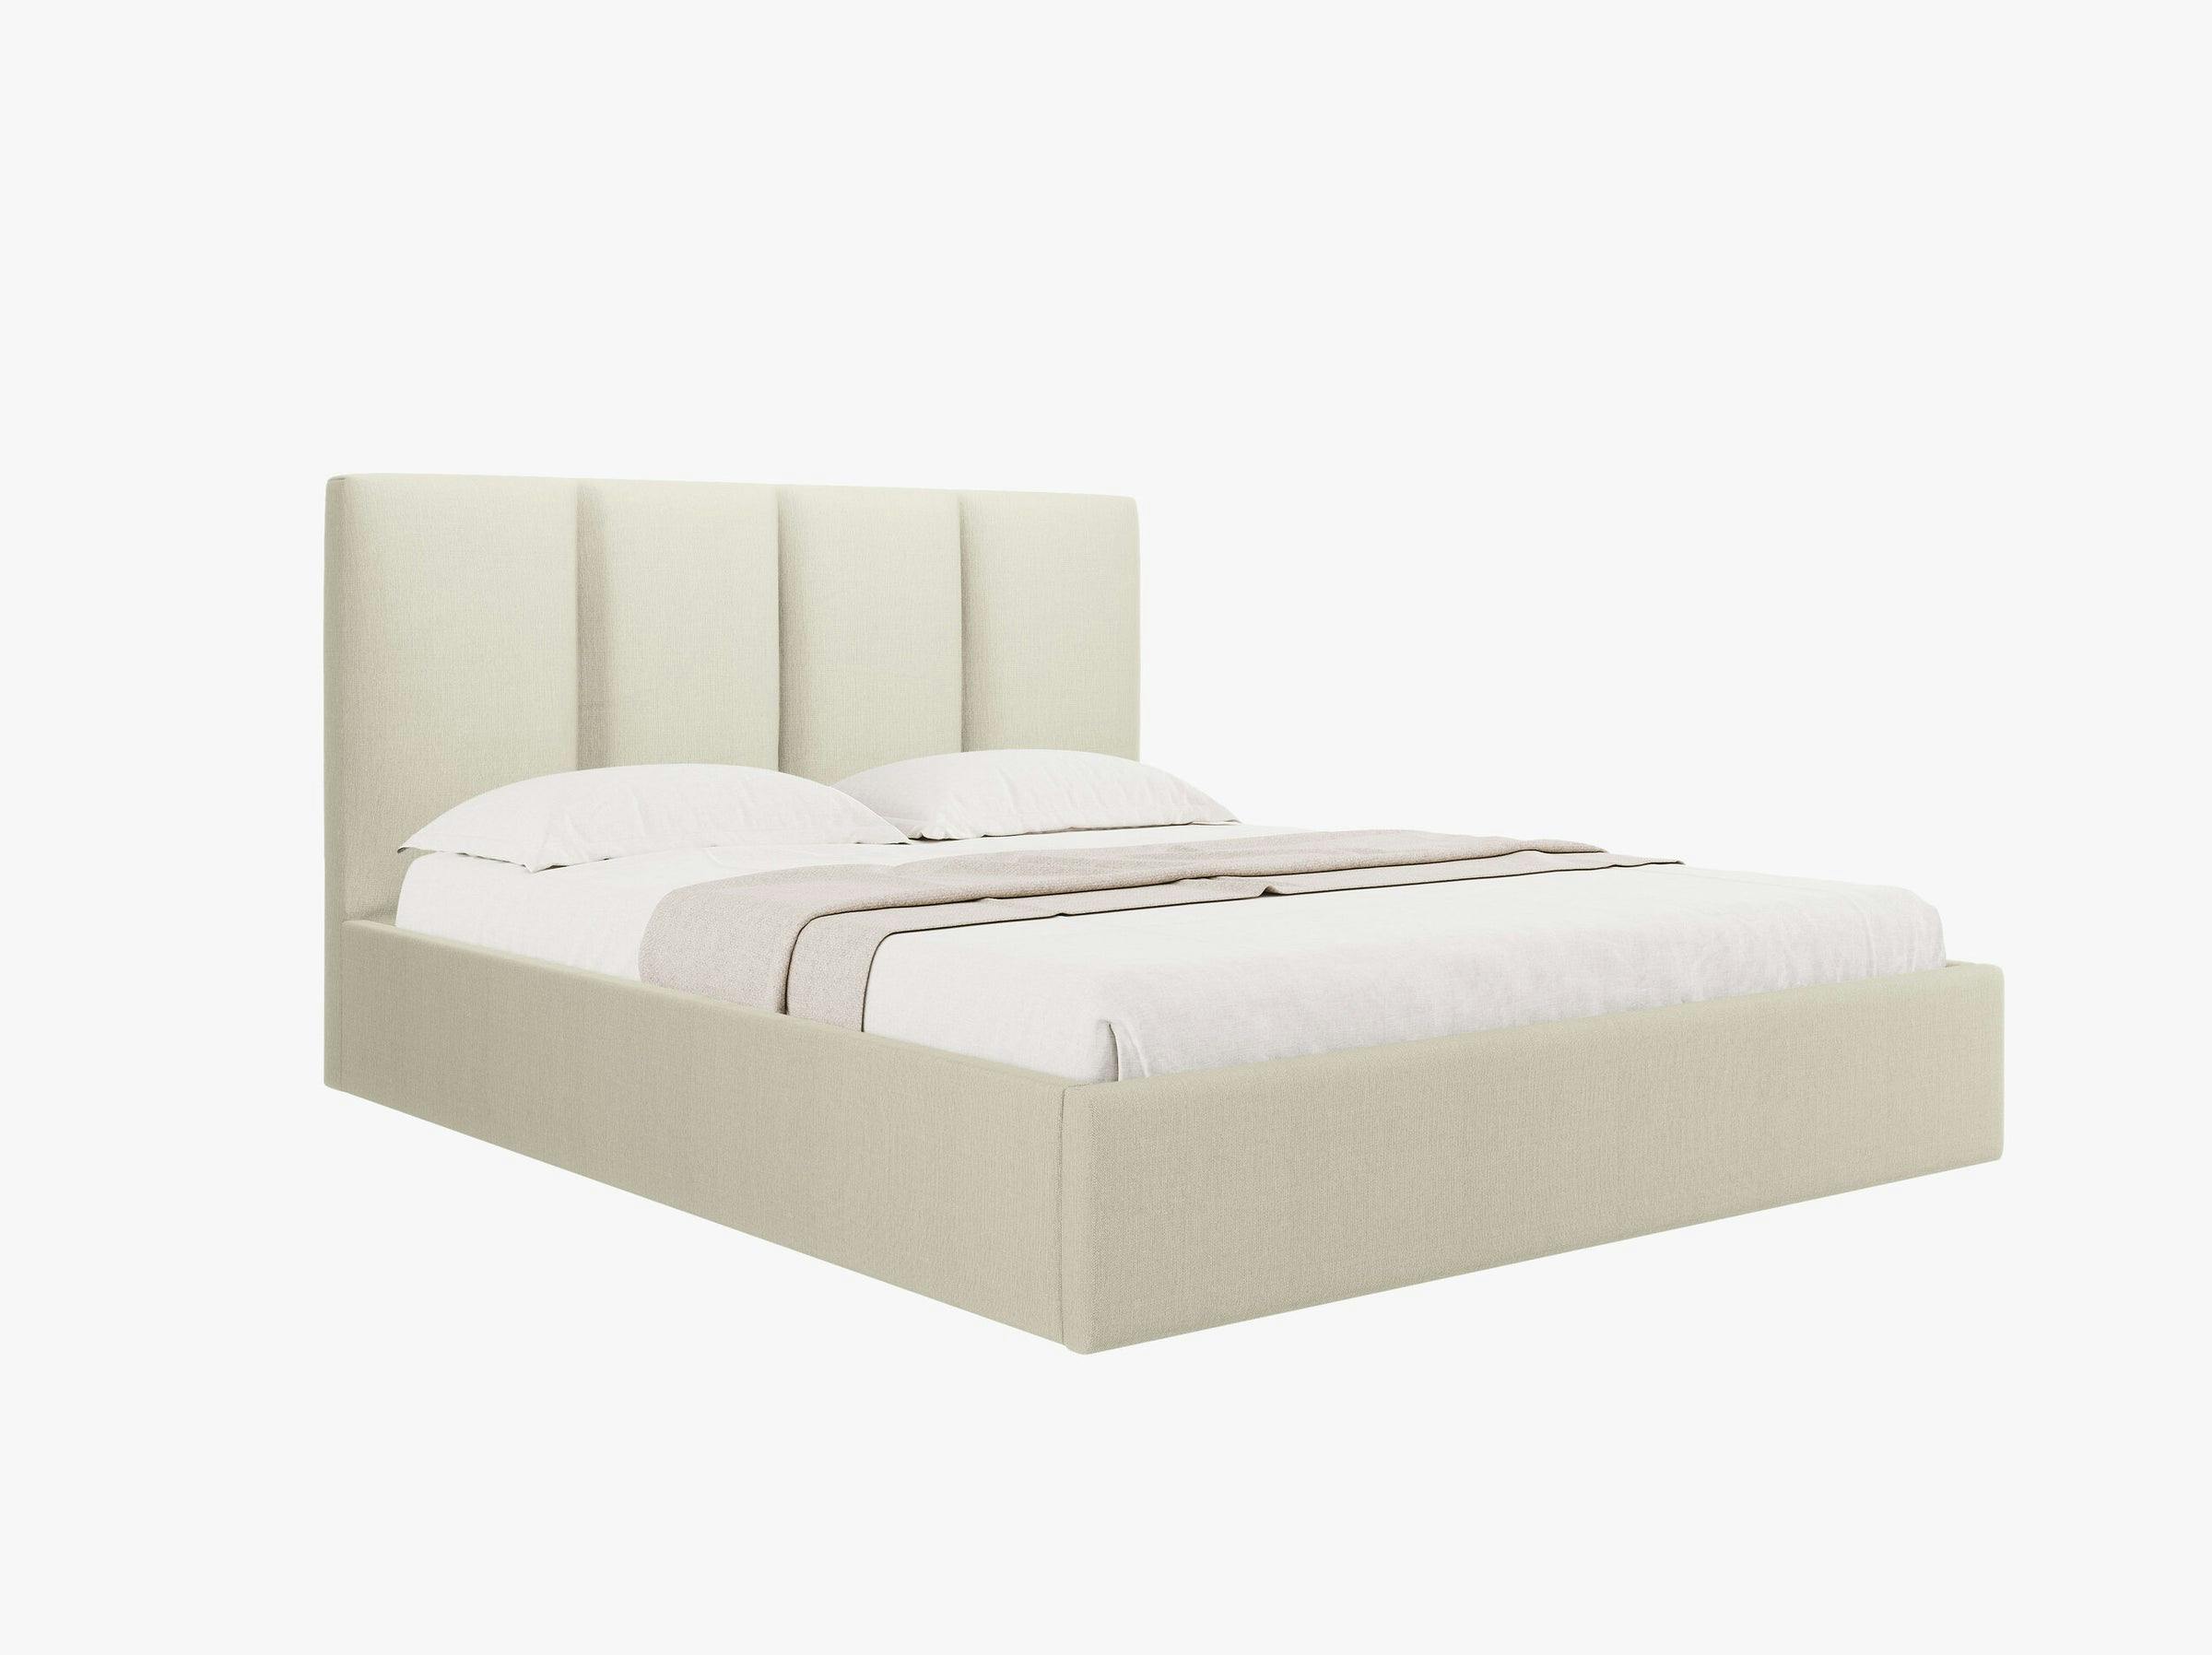 Pyla camas y colchones tejido estructurado beige